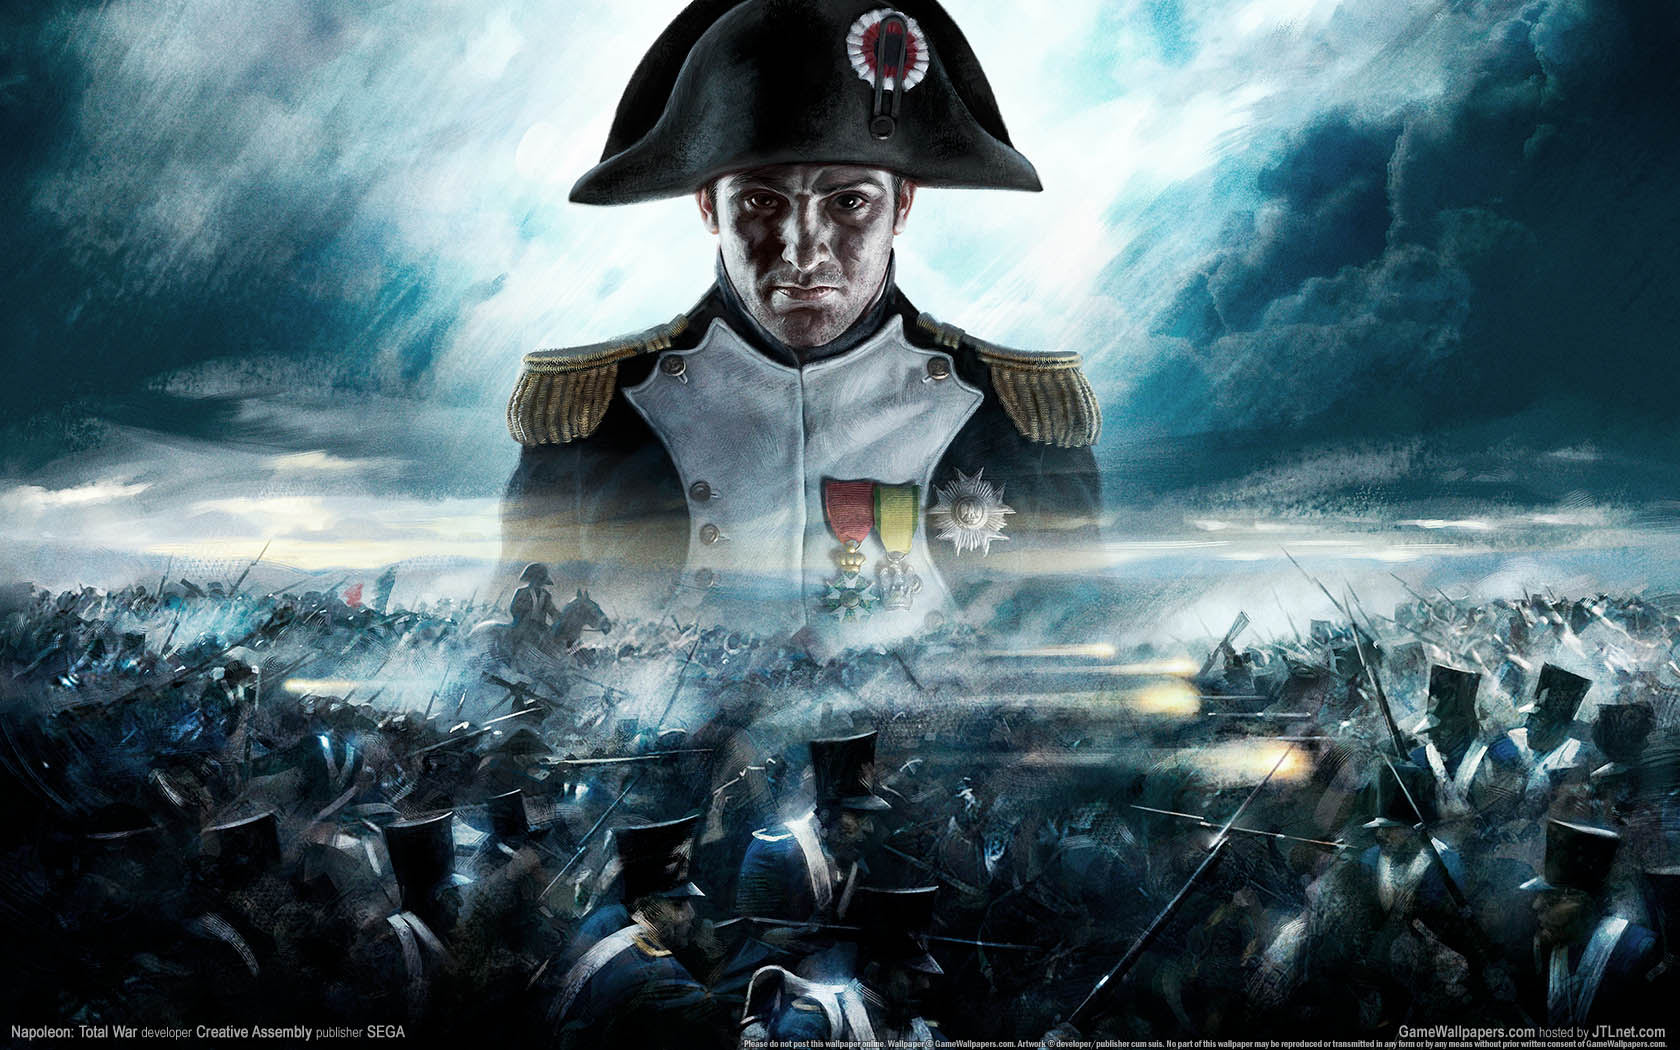 Napoleon: Total War fond d'cran 01 1680x1050